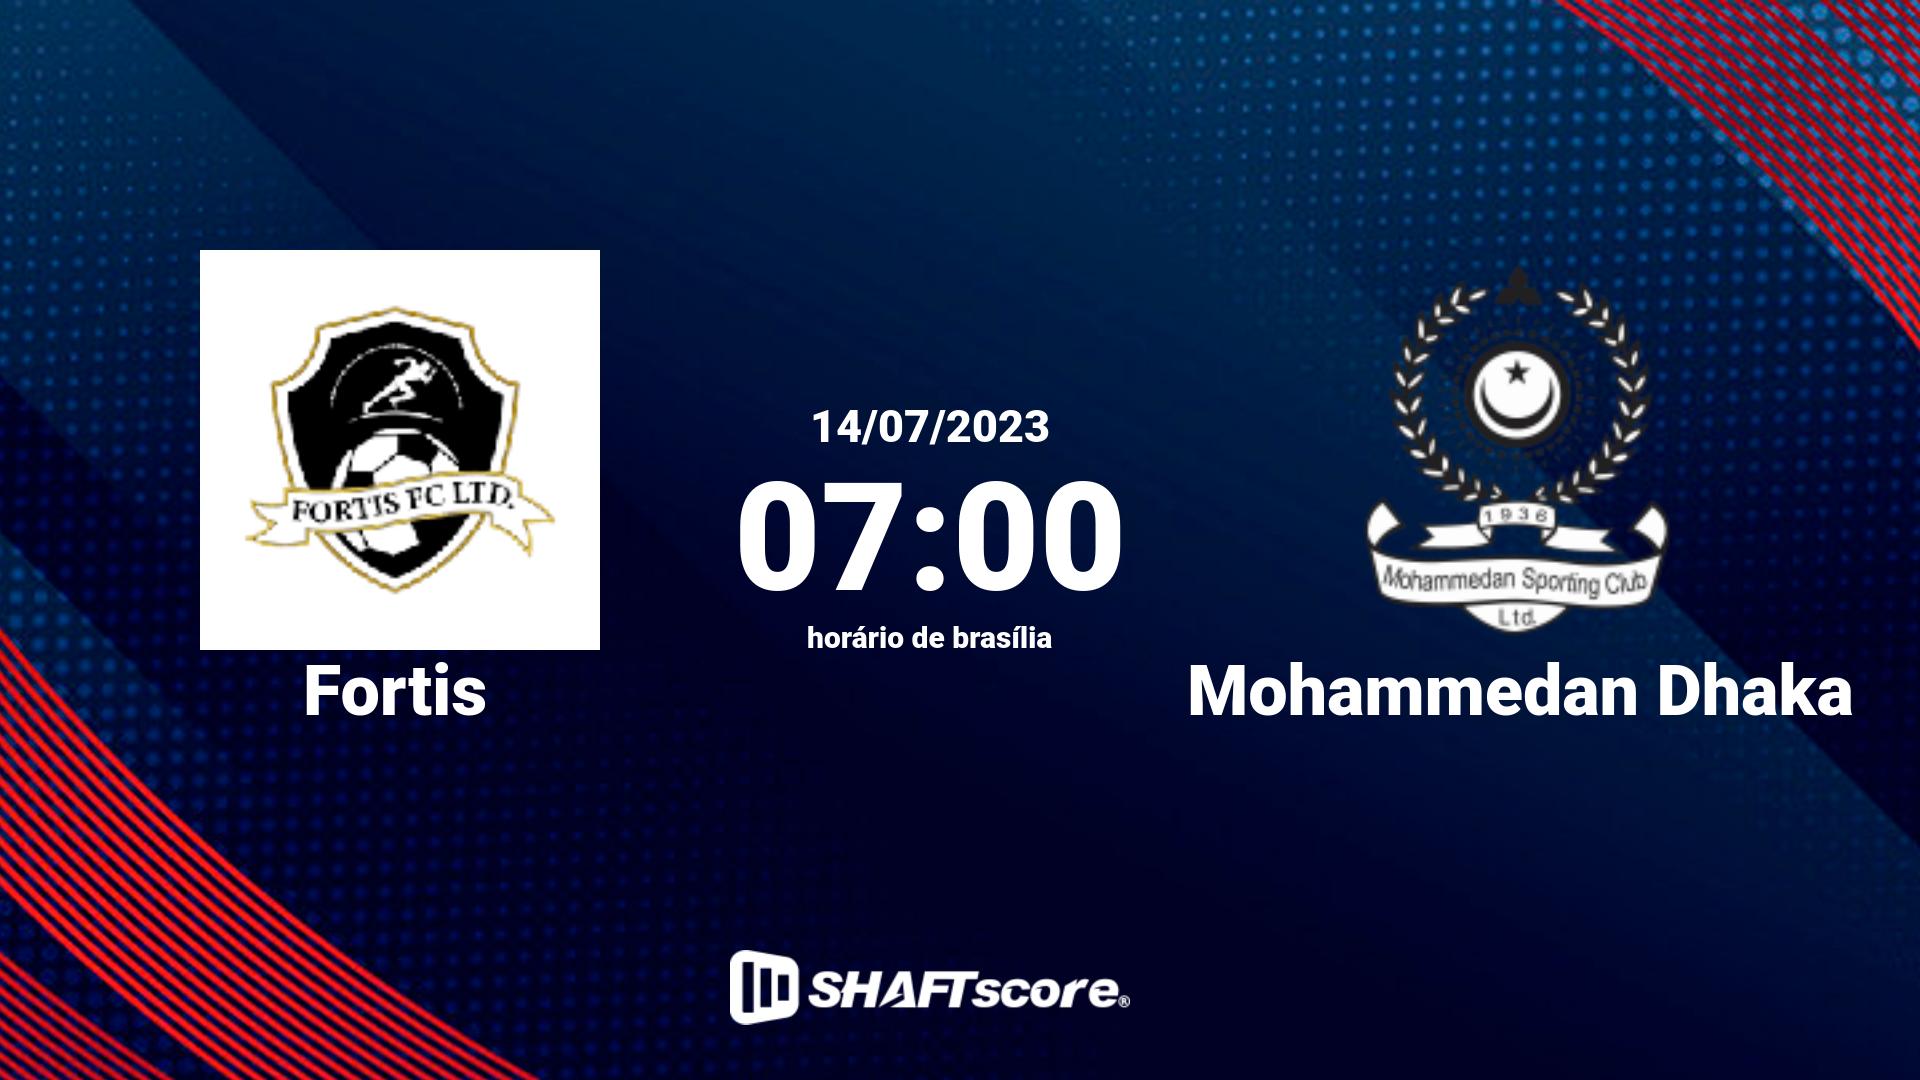 Estatísticas do jogo Fortis vs Mohammedan Dhaka 14.07 07:00